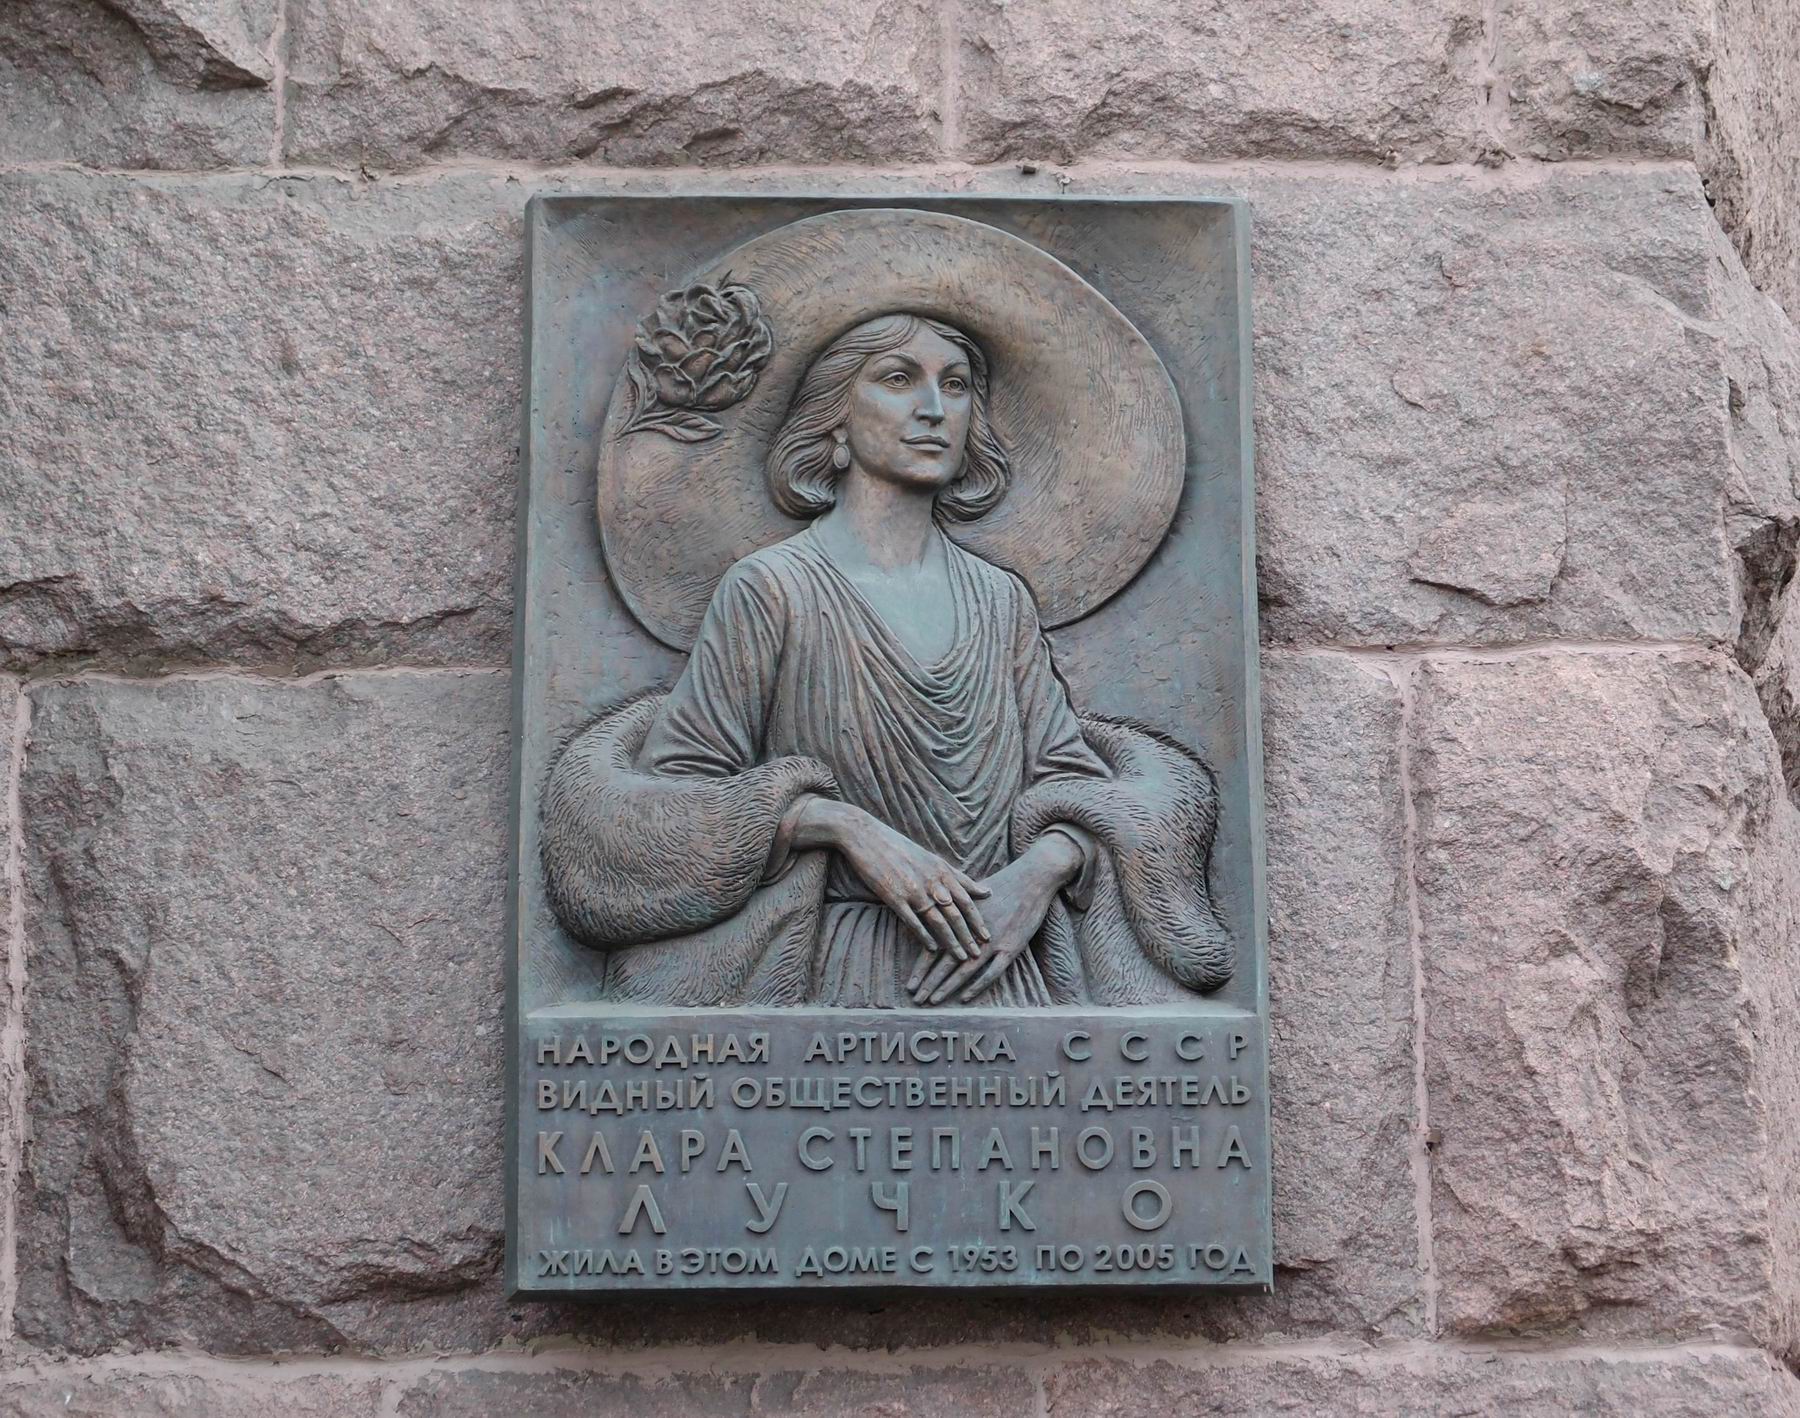 Мемориальная доска Лучко К.С. (1925–2005), ск. Д.Успенская, на Котельнической набережной, дом 1/15, открыта 5.3.2008.